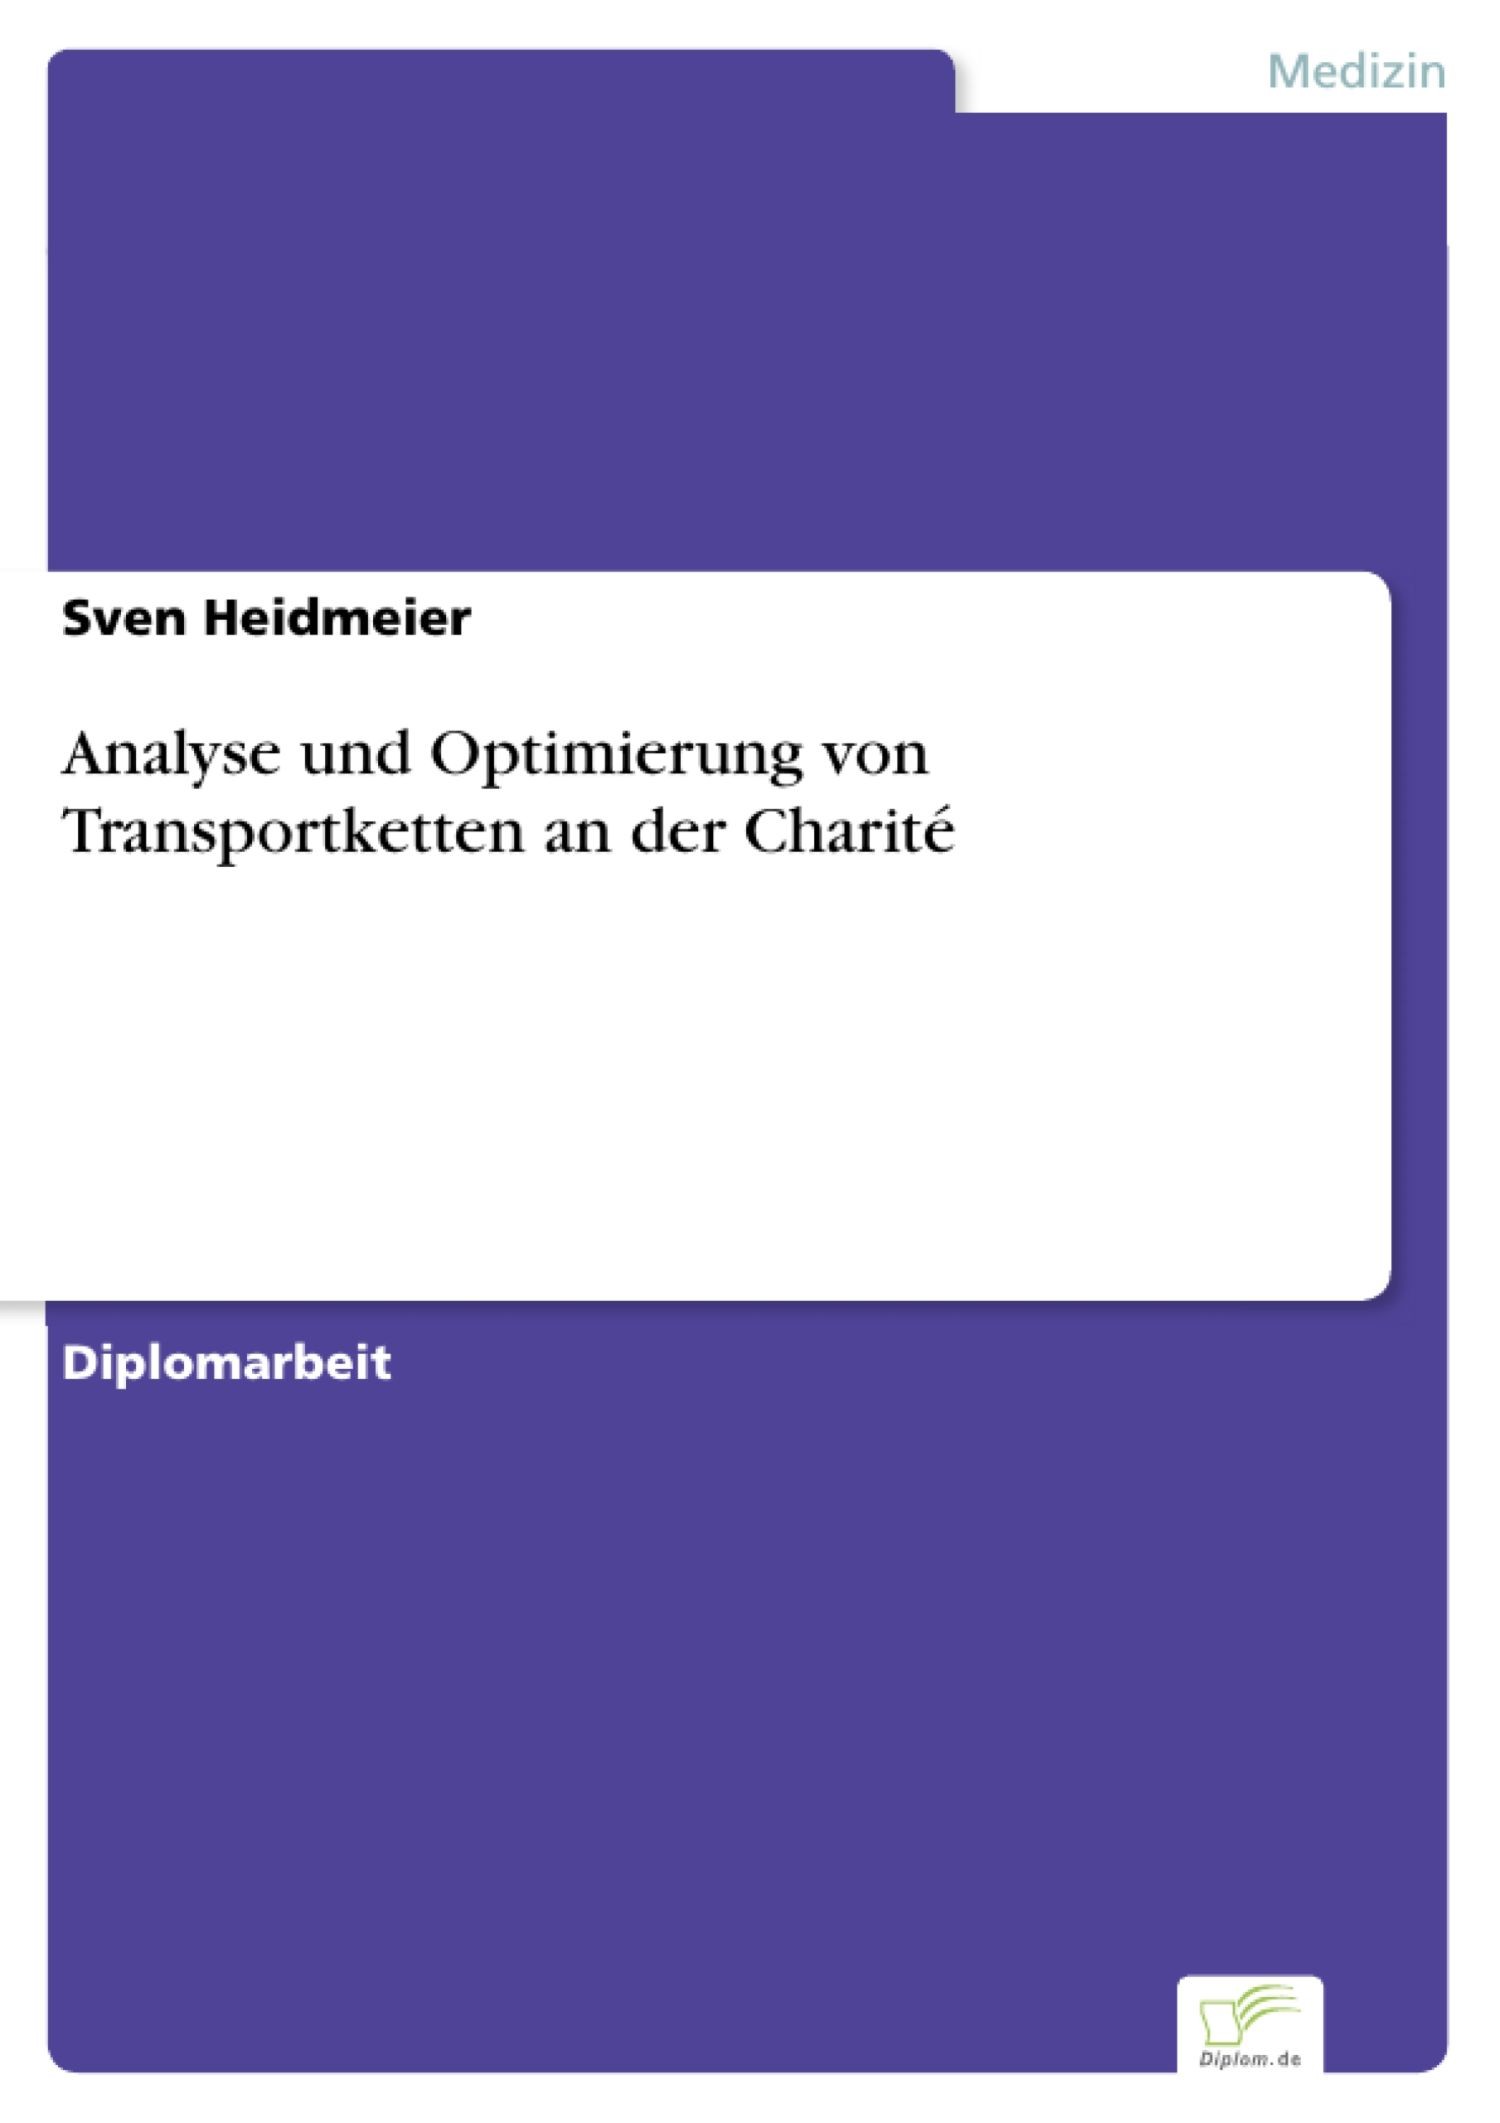 Analyse und Optimierung von Transportketten an der Charité